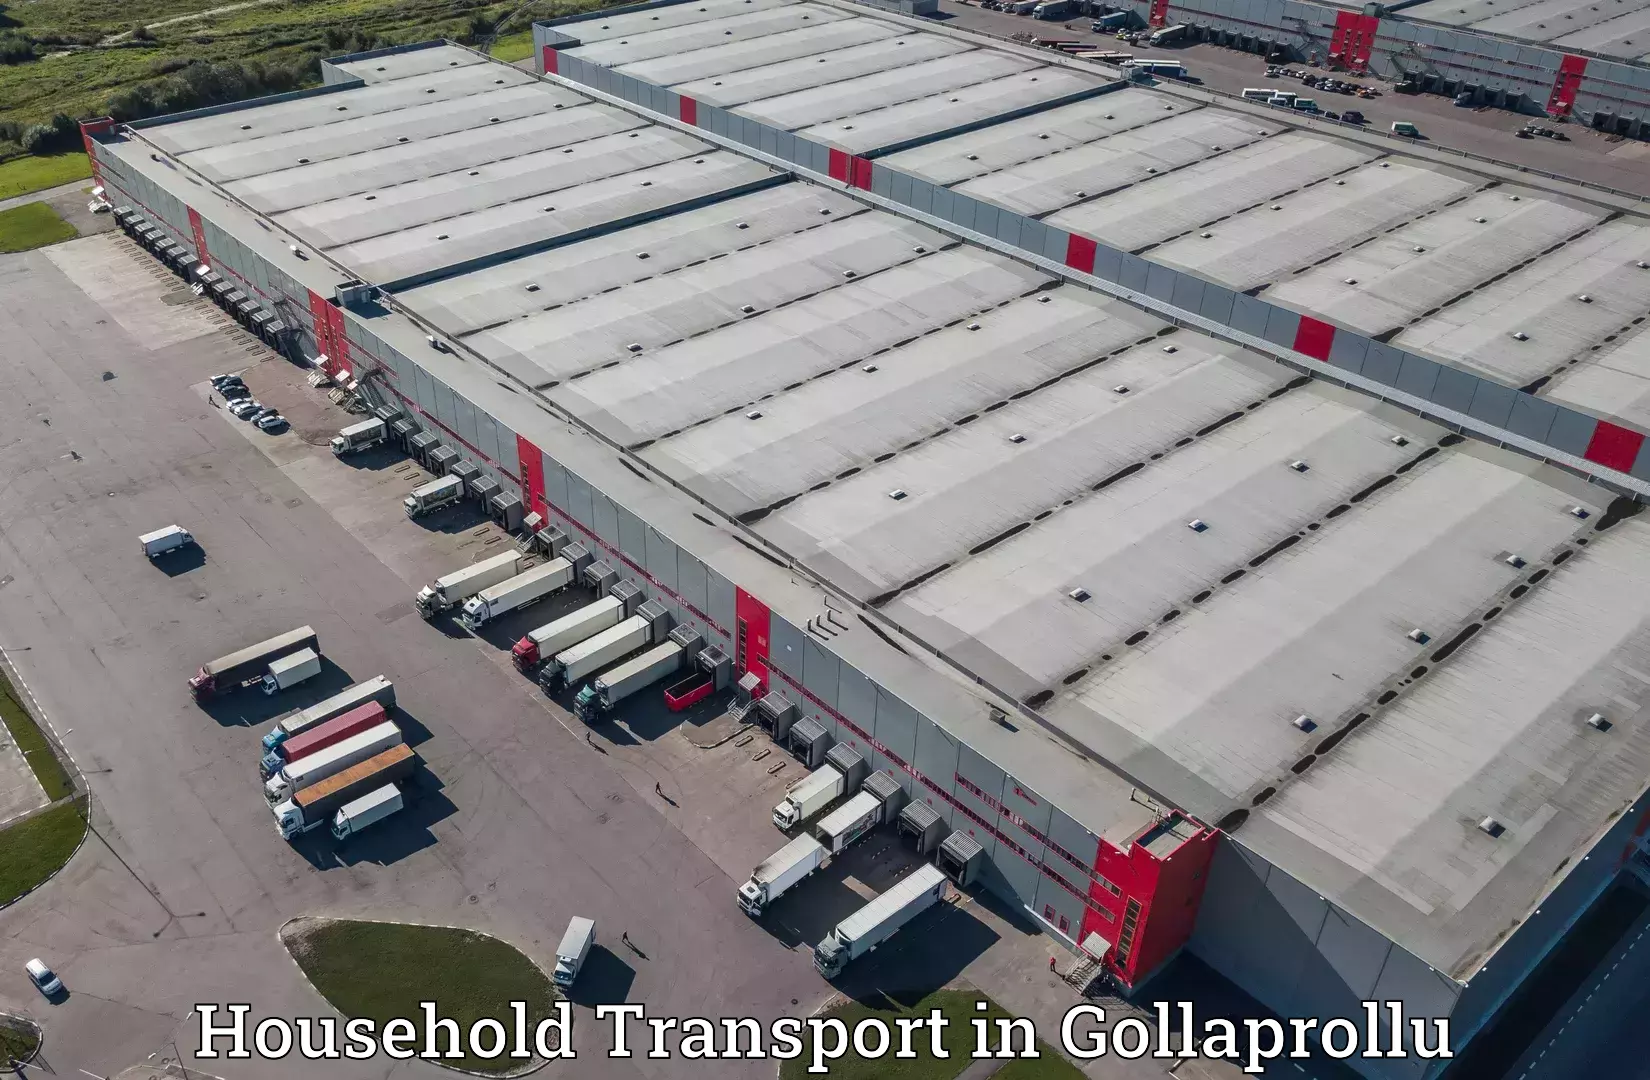 Furniture transport and logistics in Gollaprollu